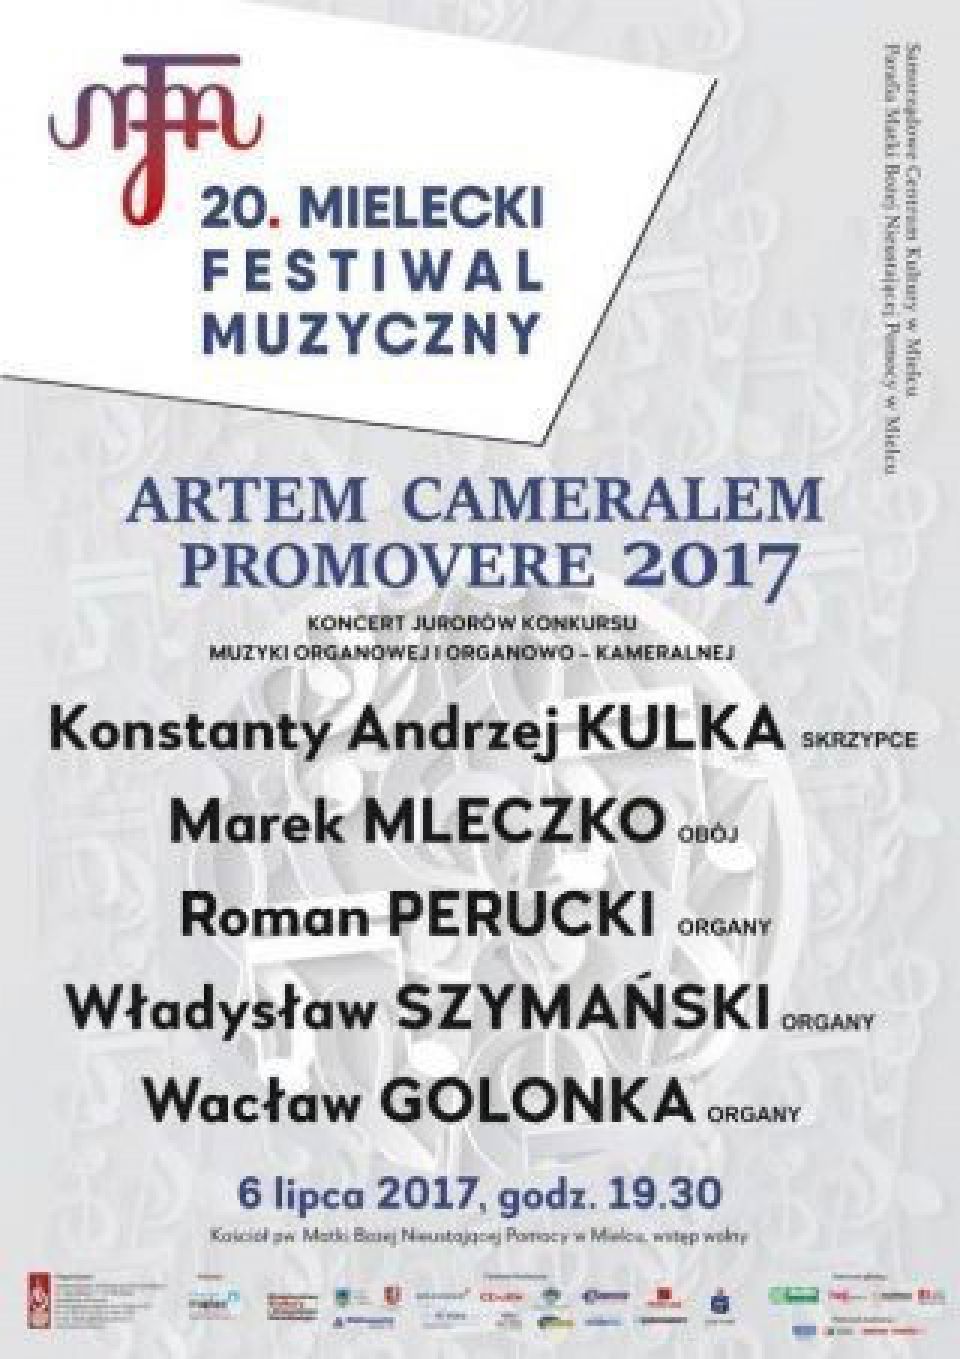 Koncert Jurorów Artem Cameralem Promovere